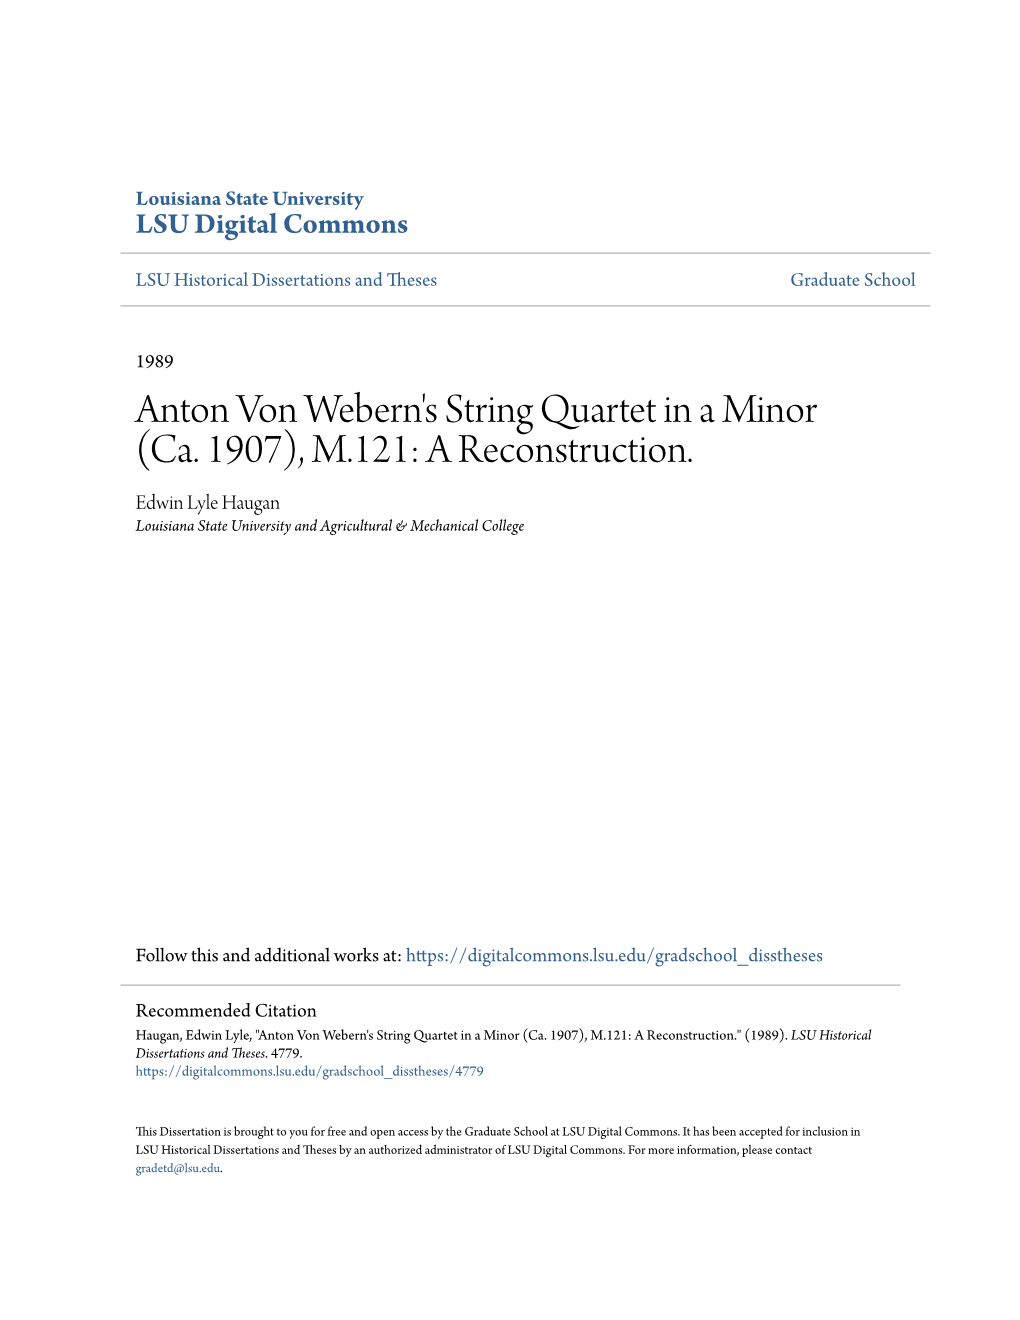 Anton Von Webern's String Quartet in a Minor (Ca